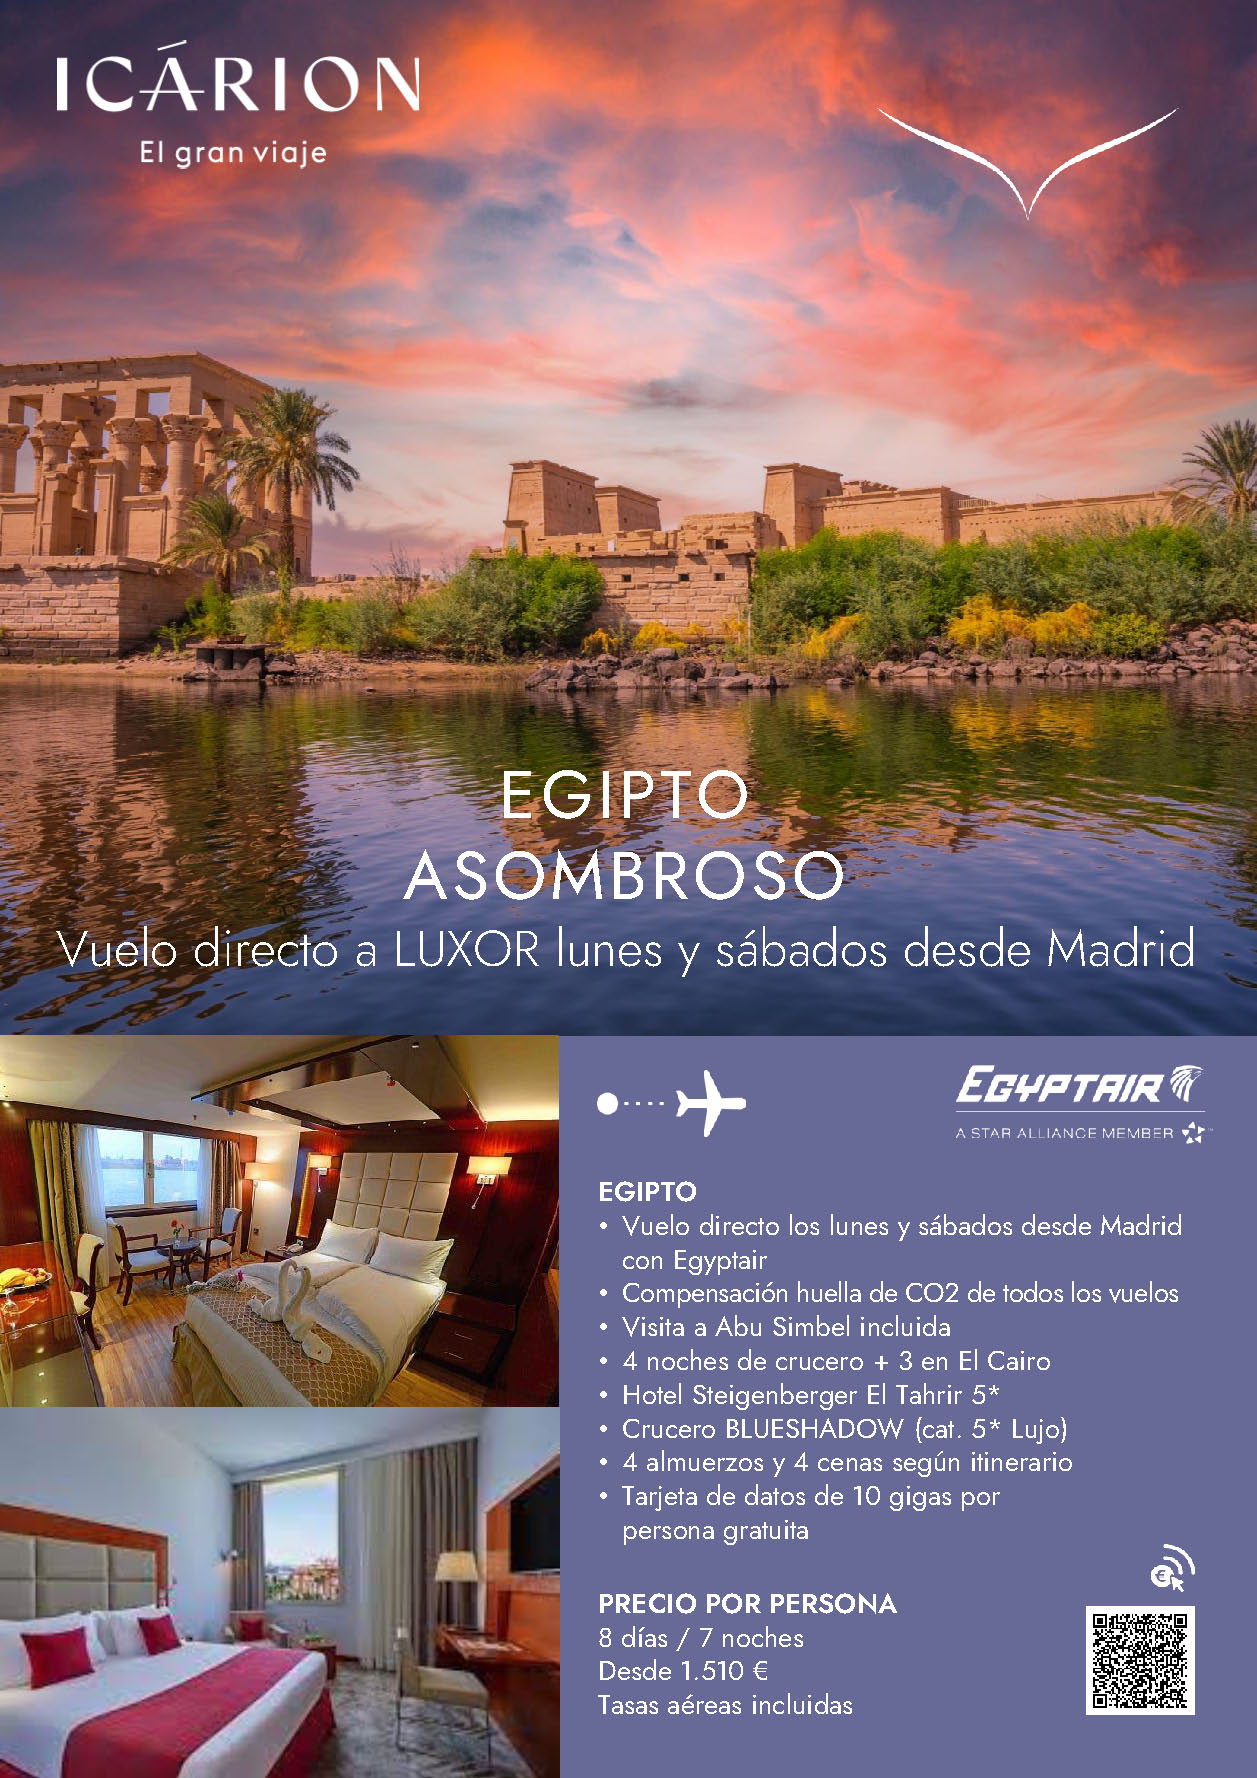 I2335 Icárion Oferta Egipto Asombroso 8 dias vuelos Egyptair directos a Luxor desde Madrid hoteles 5 estrellas